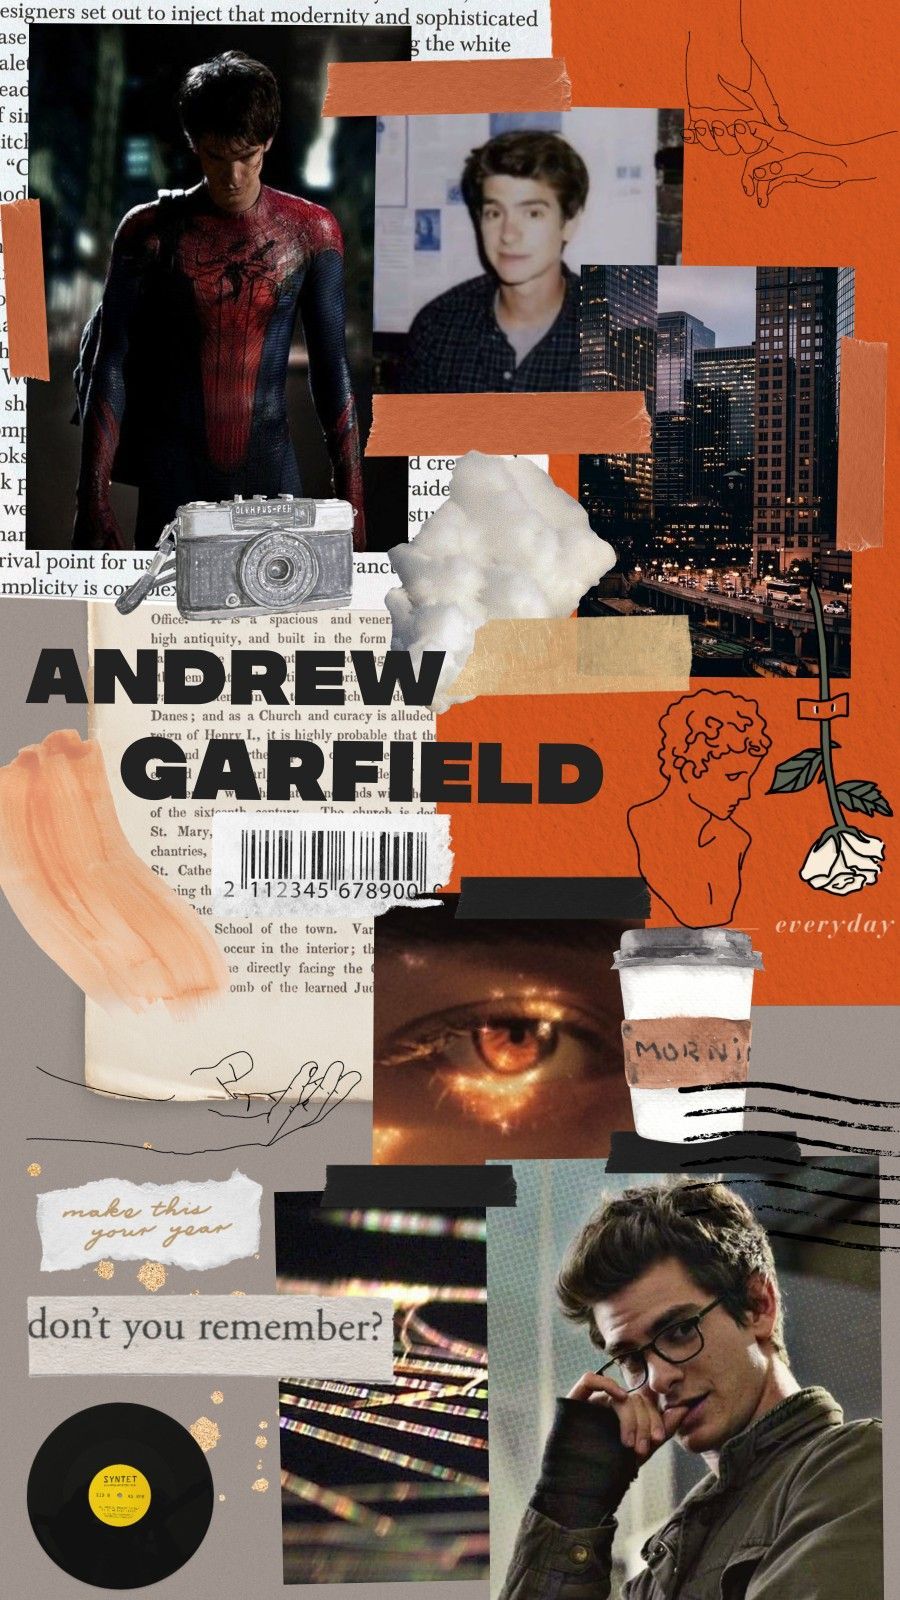 Andrew Garfield Wallpaper. Fotos de spiderman, Fotos de marvel, Superhéroes